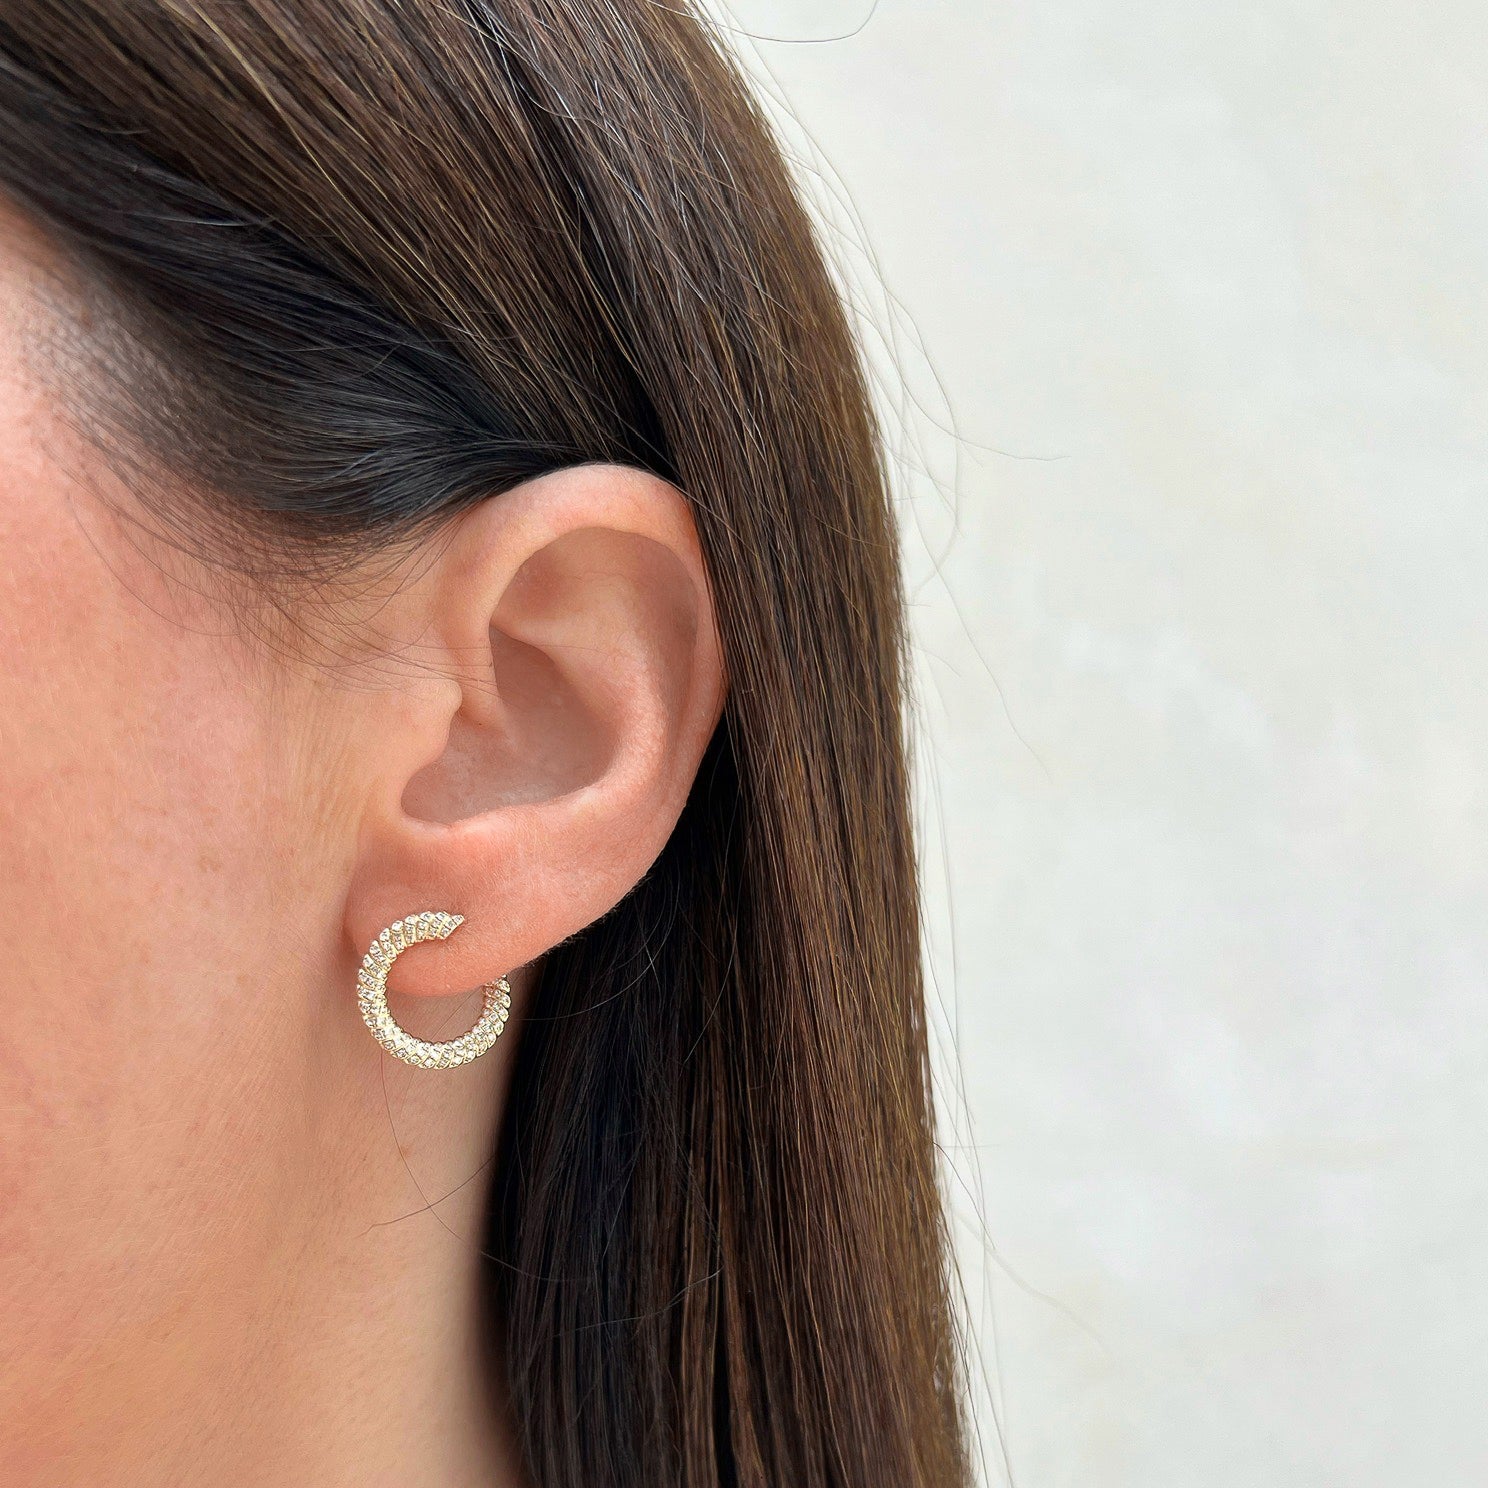 Diamond Twist Wrap Earring in 14k yellow gold styled on ear lobe of model